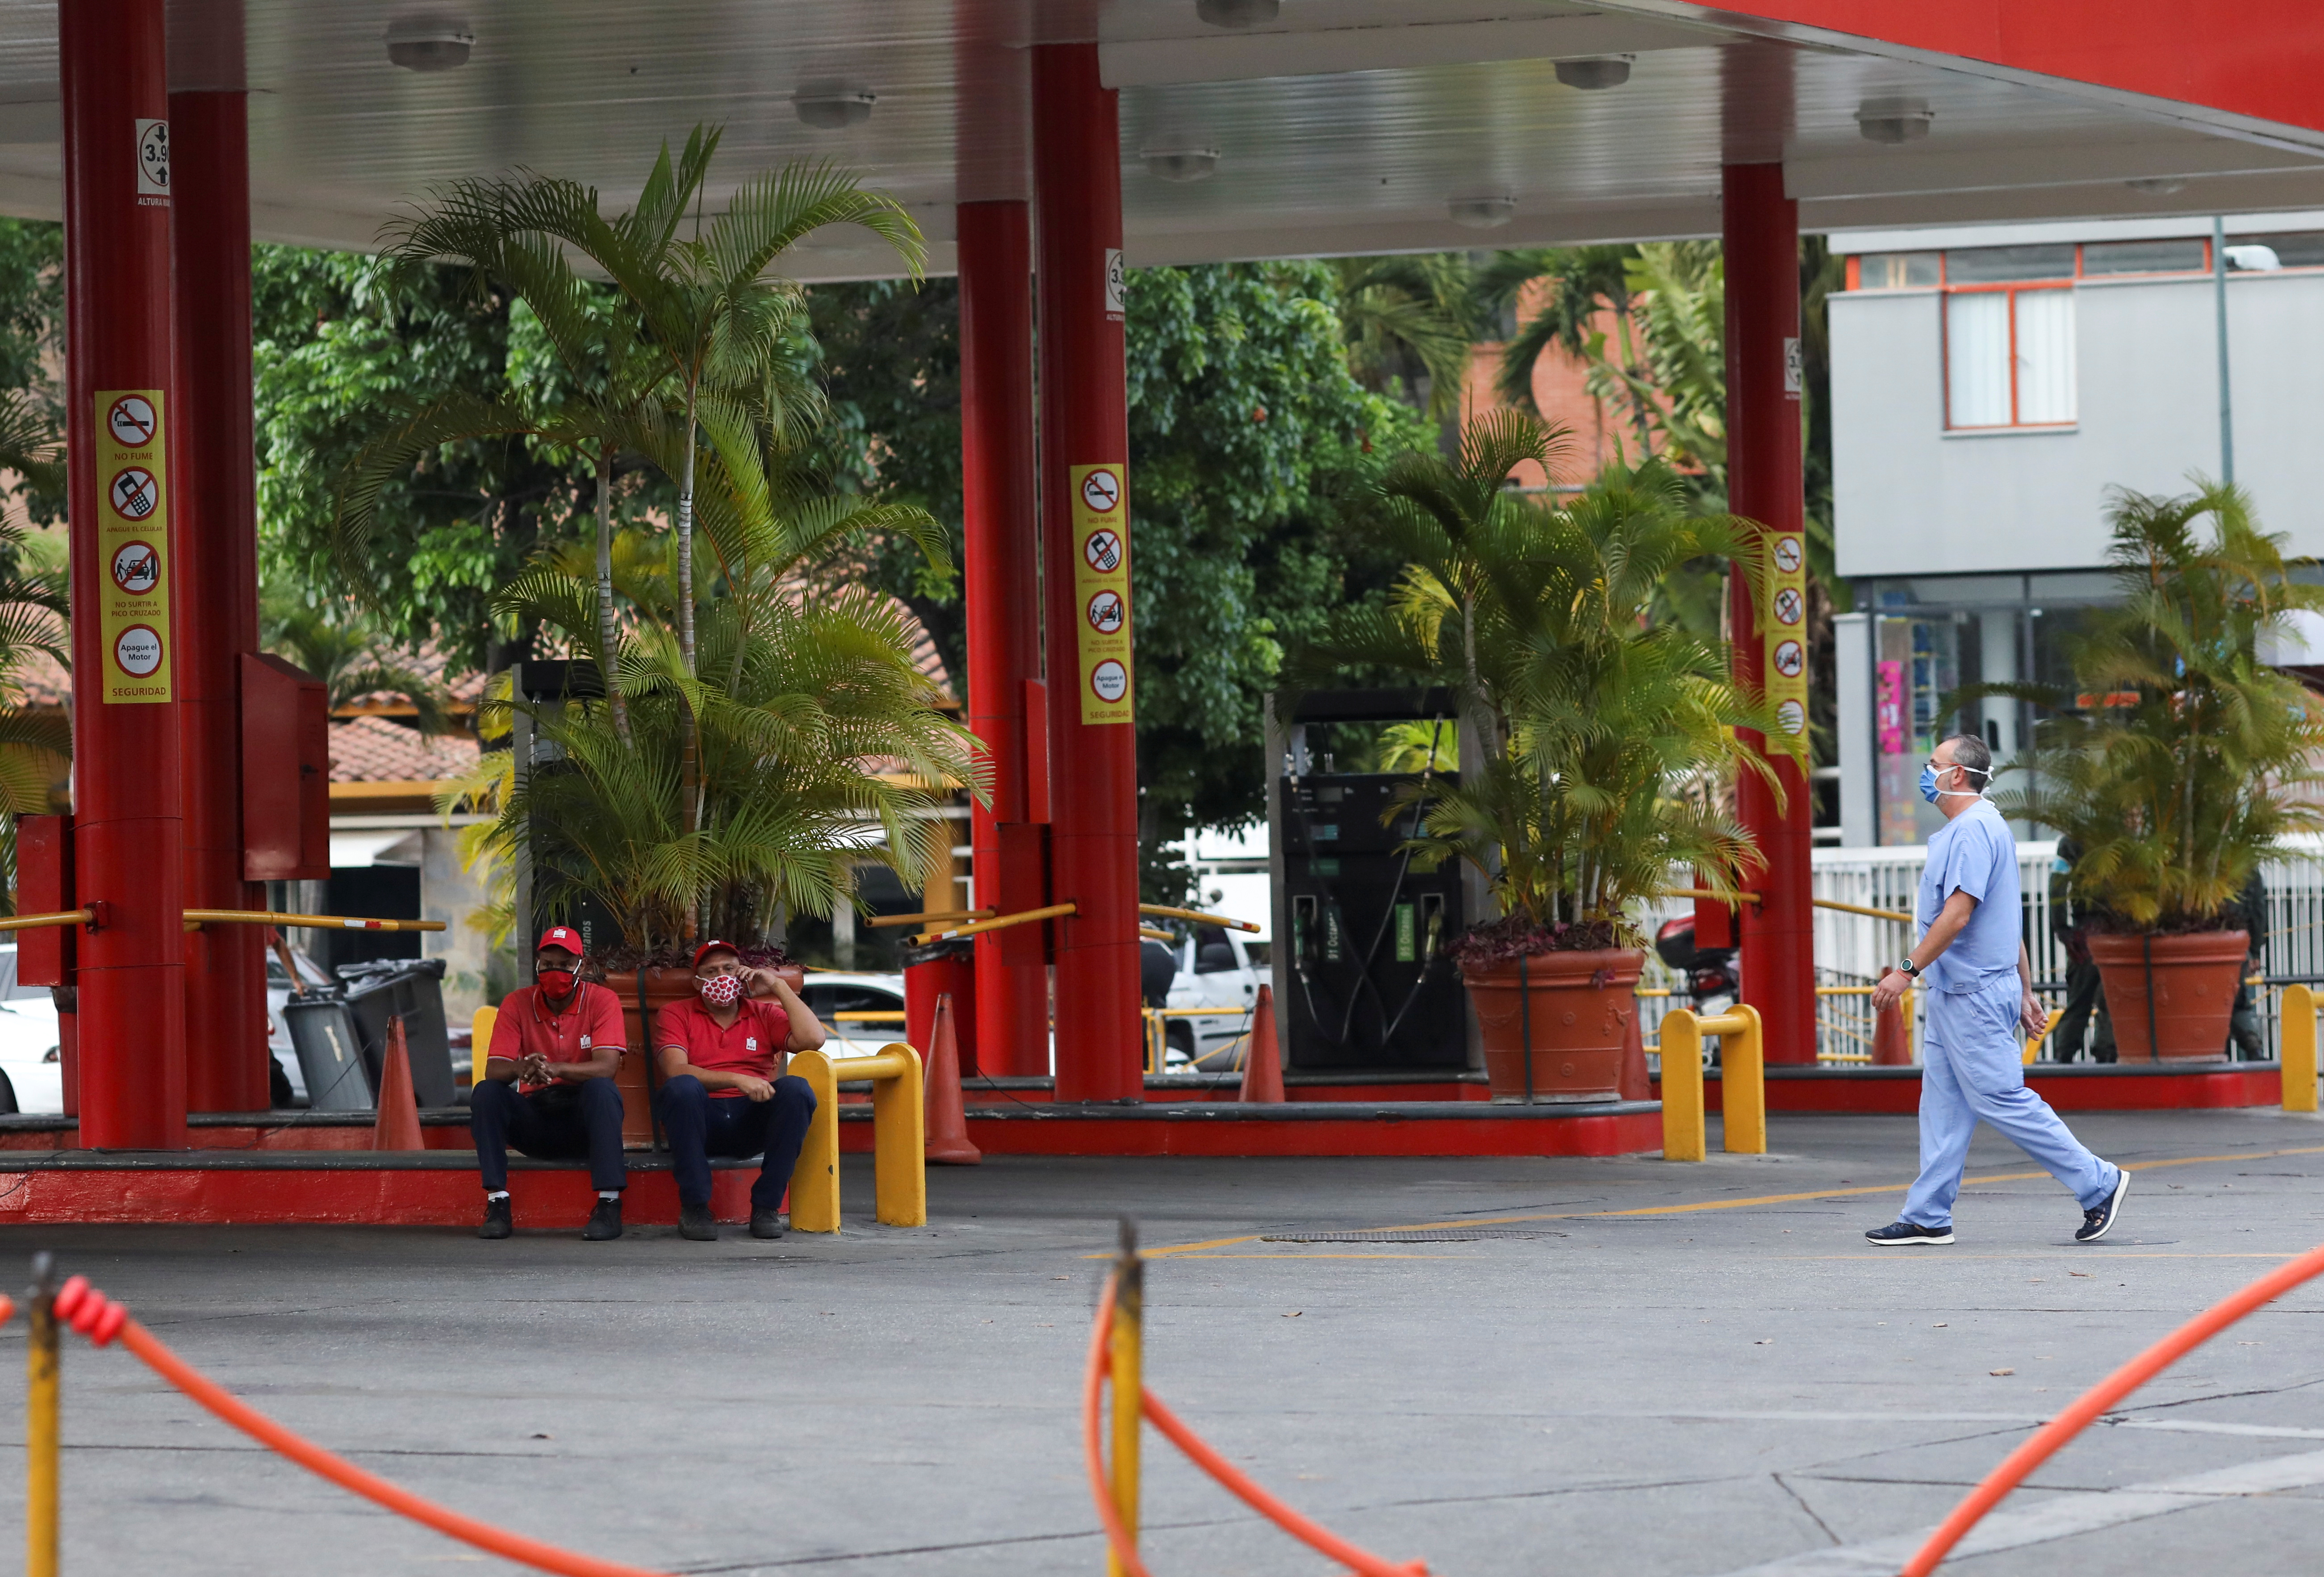 ¿Sanciones o corrupción chavista? Por qué Venezuela sufre una grave escasez de gasolina